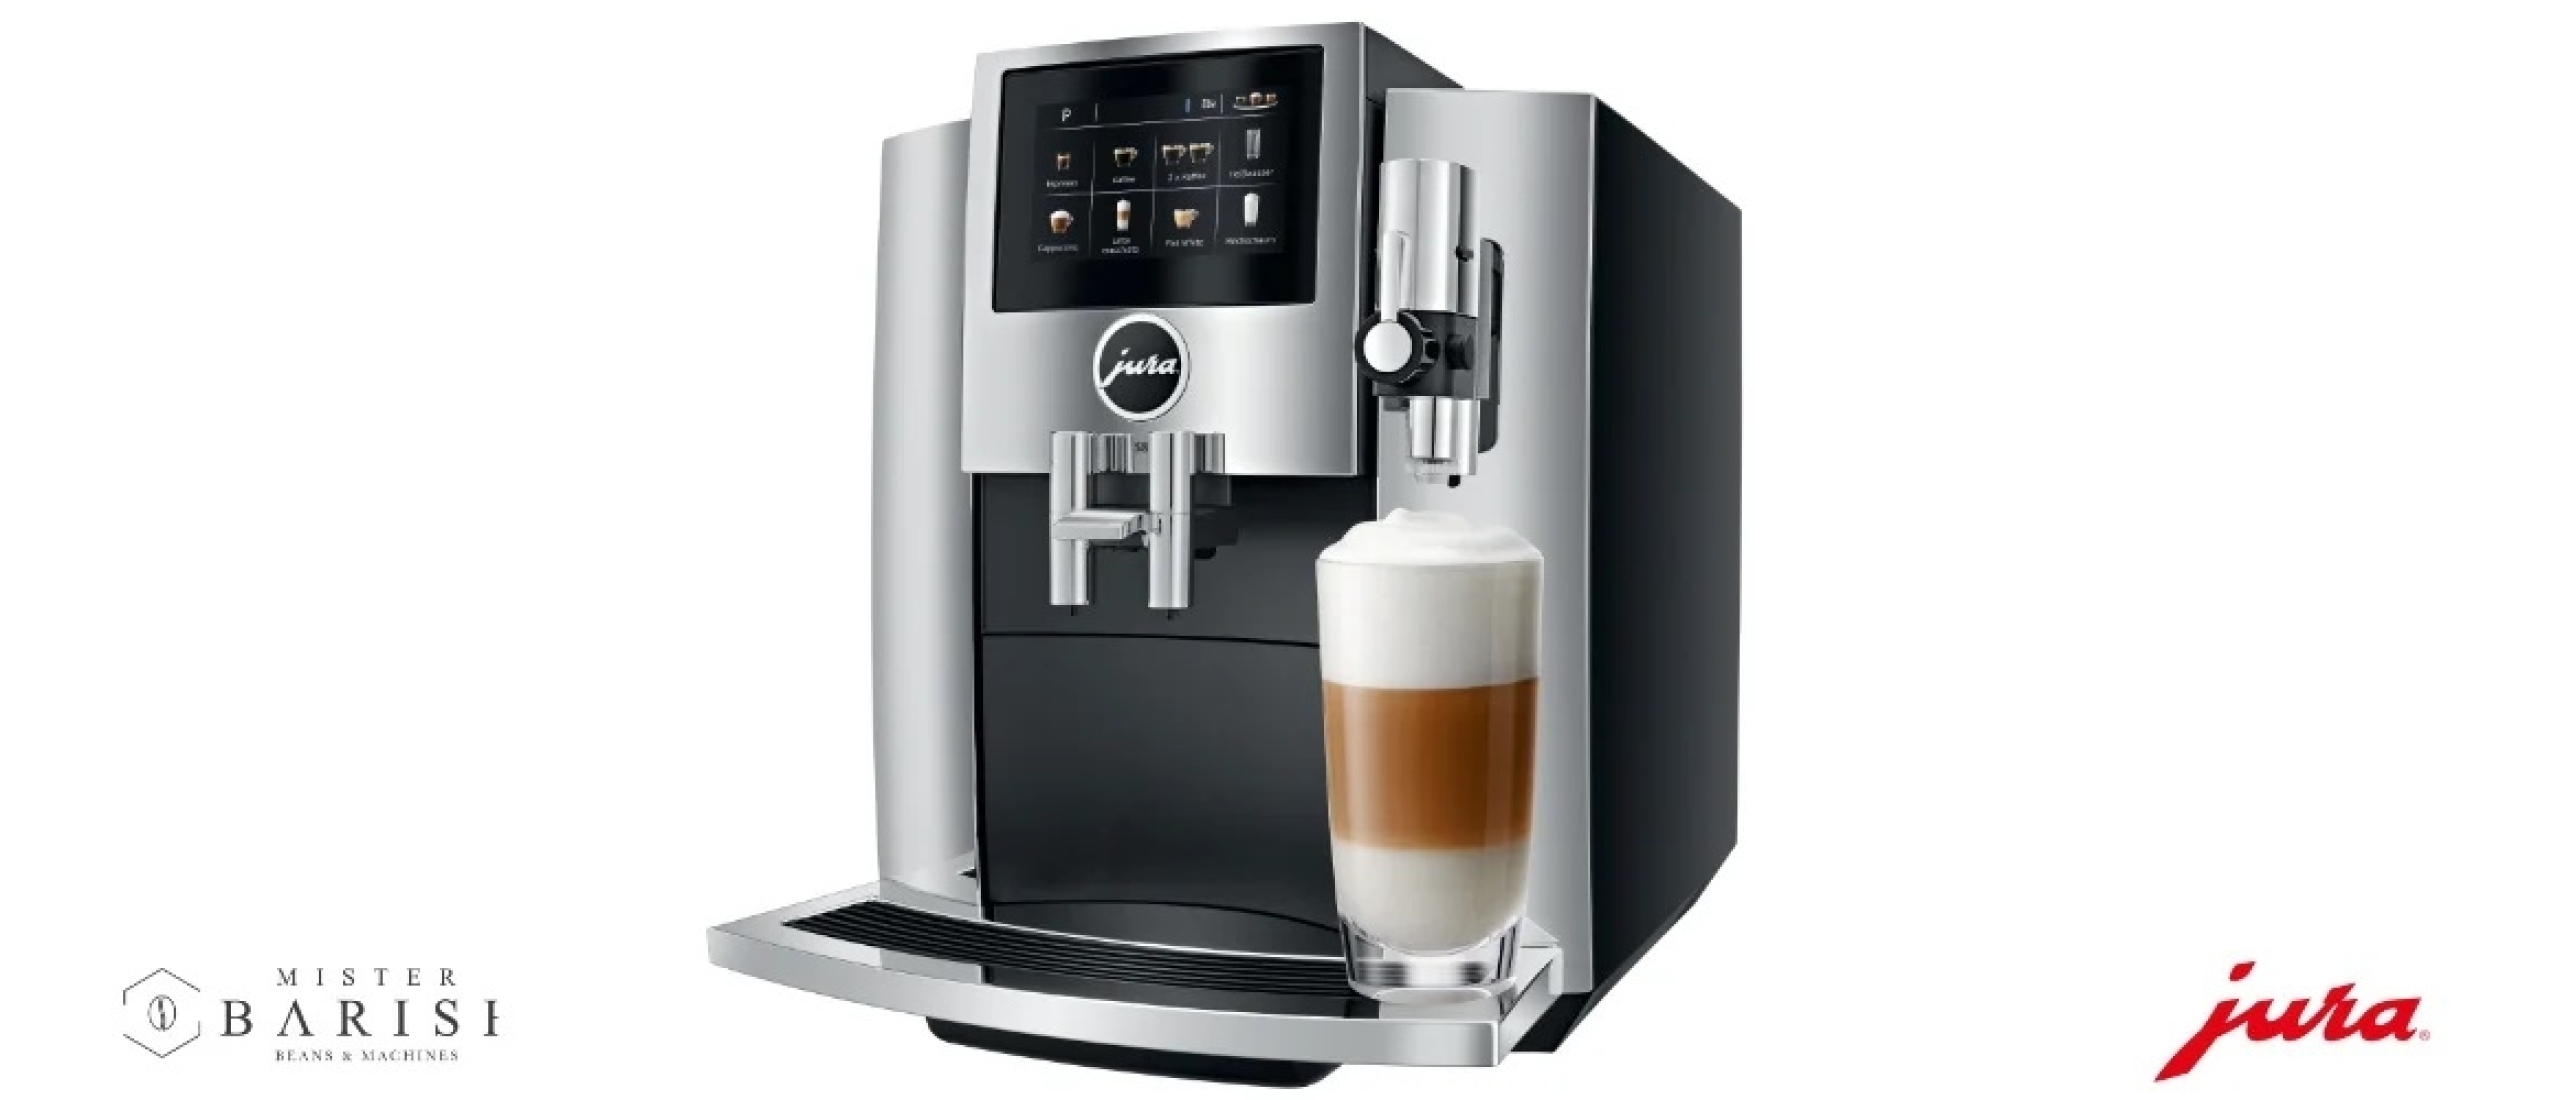 Jura S8, une machine à café innovante pour un café délicieux